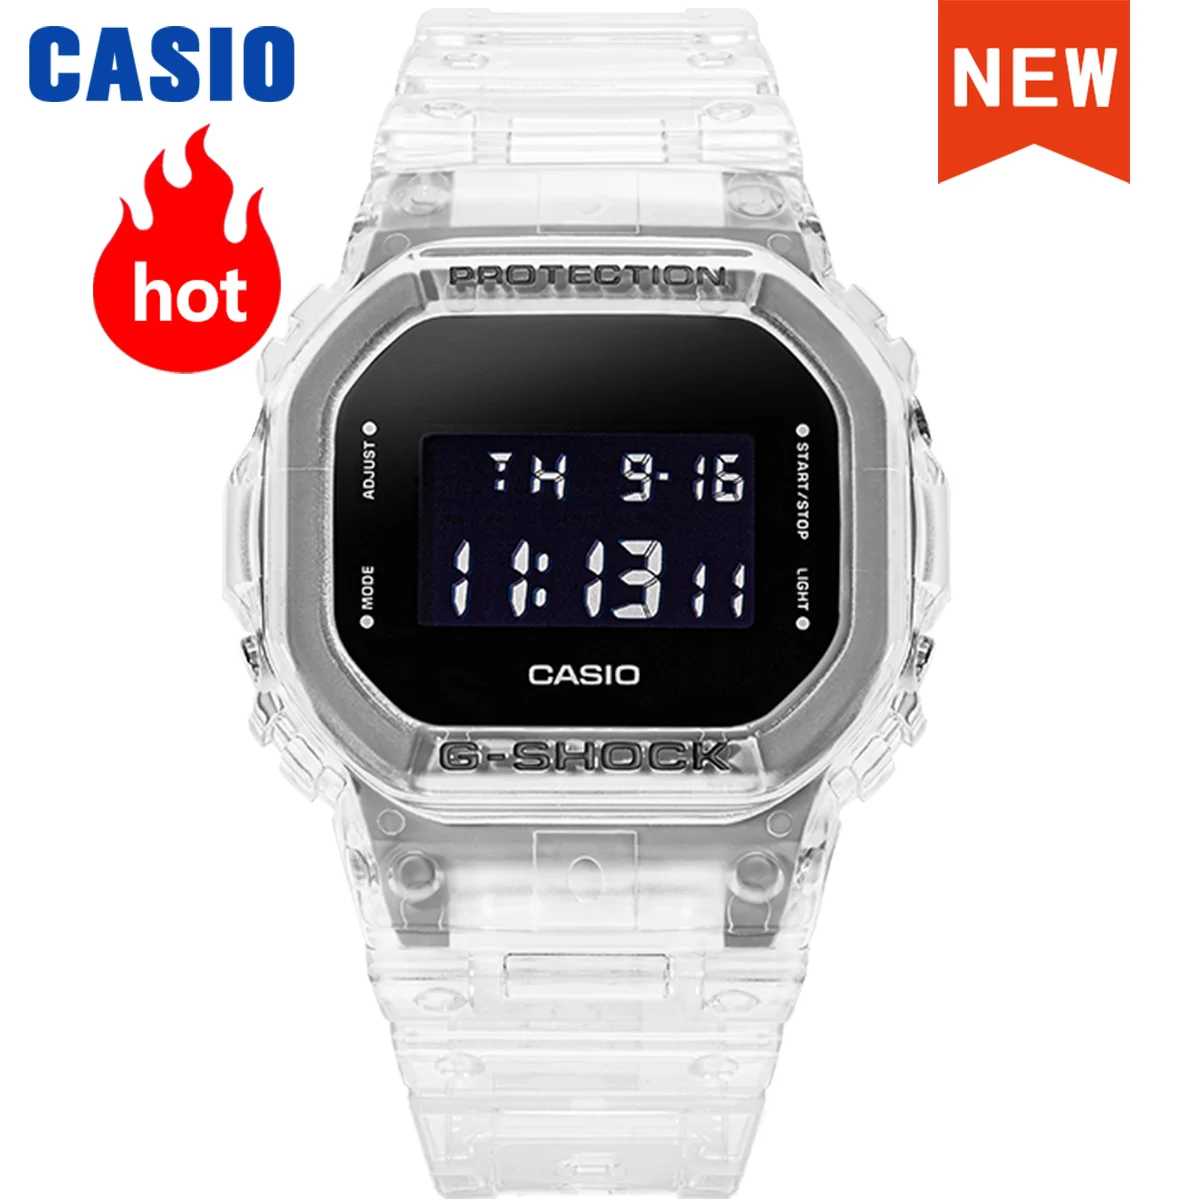 Casio uhr für männer g schock top luxus wasserdicht kleiner würfel eis  tough gaming serie relogio masculino DW-5600SKE-7 - AliExpress